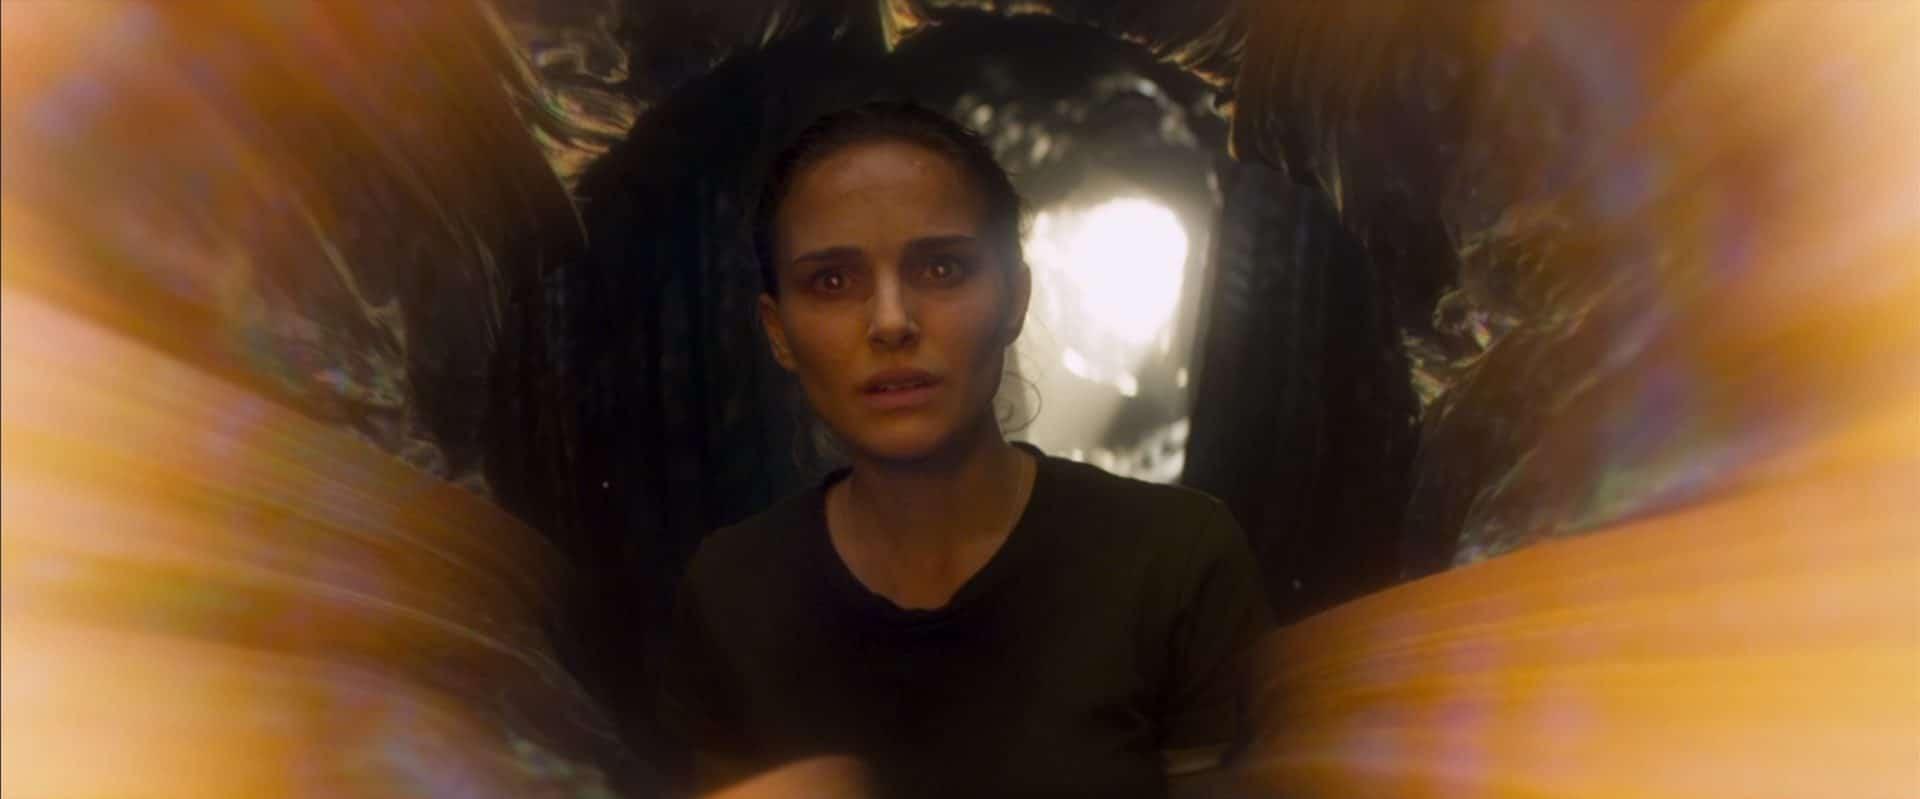 Aniquilação | Novo teaser mostra eventos do filme nos olhos de Natalie Portman